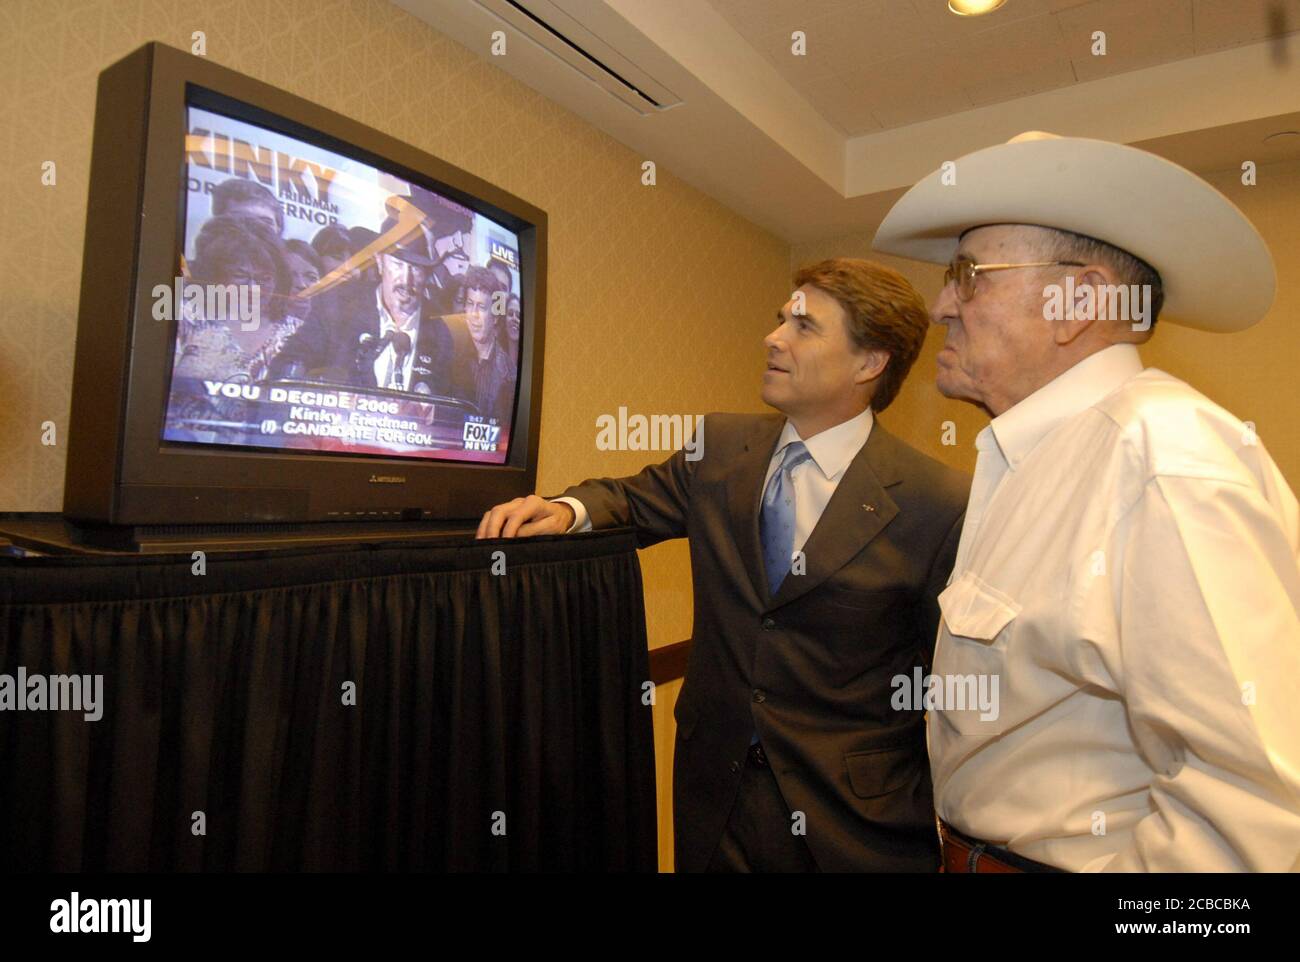 Austin, Texas USA, 7. November 2006: Der Gouverneur von Texas Rick Perry (links) und sein Vater Ray (rechts) sehen, wie der Herausforderer Kinky Friedman im Fernsehen das Rennen des Gouverneurs an Perry gesteht. ©Bob Daemmrich Stockfoto